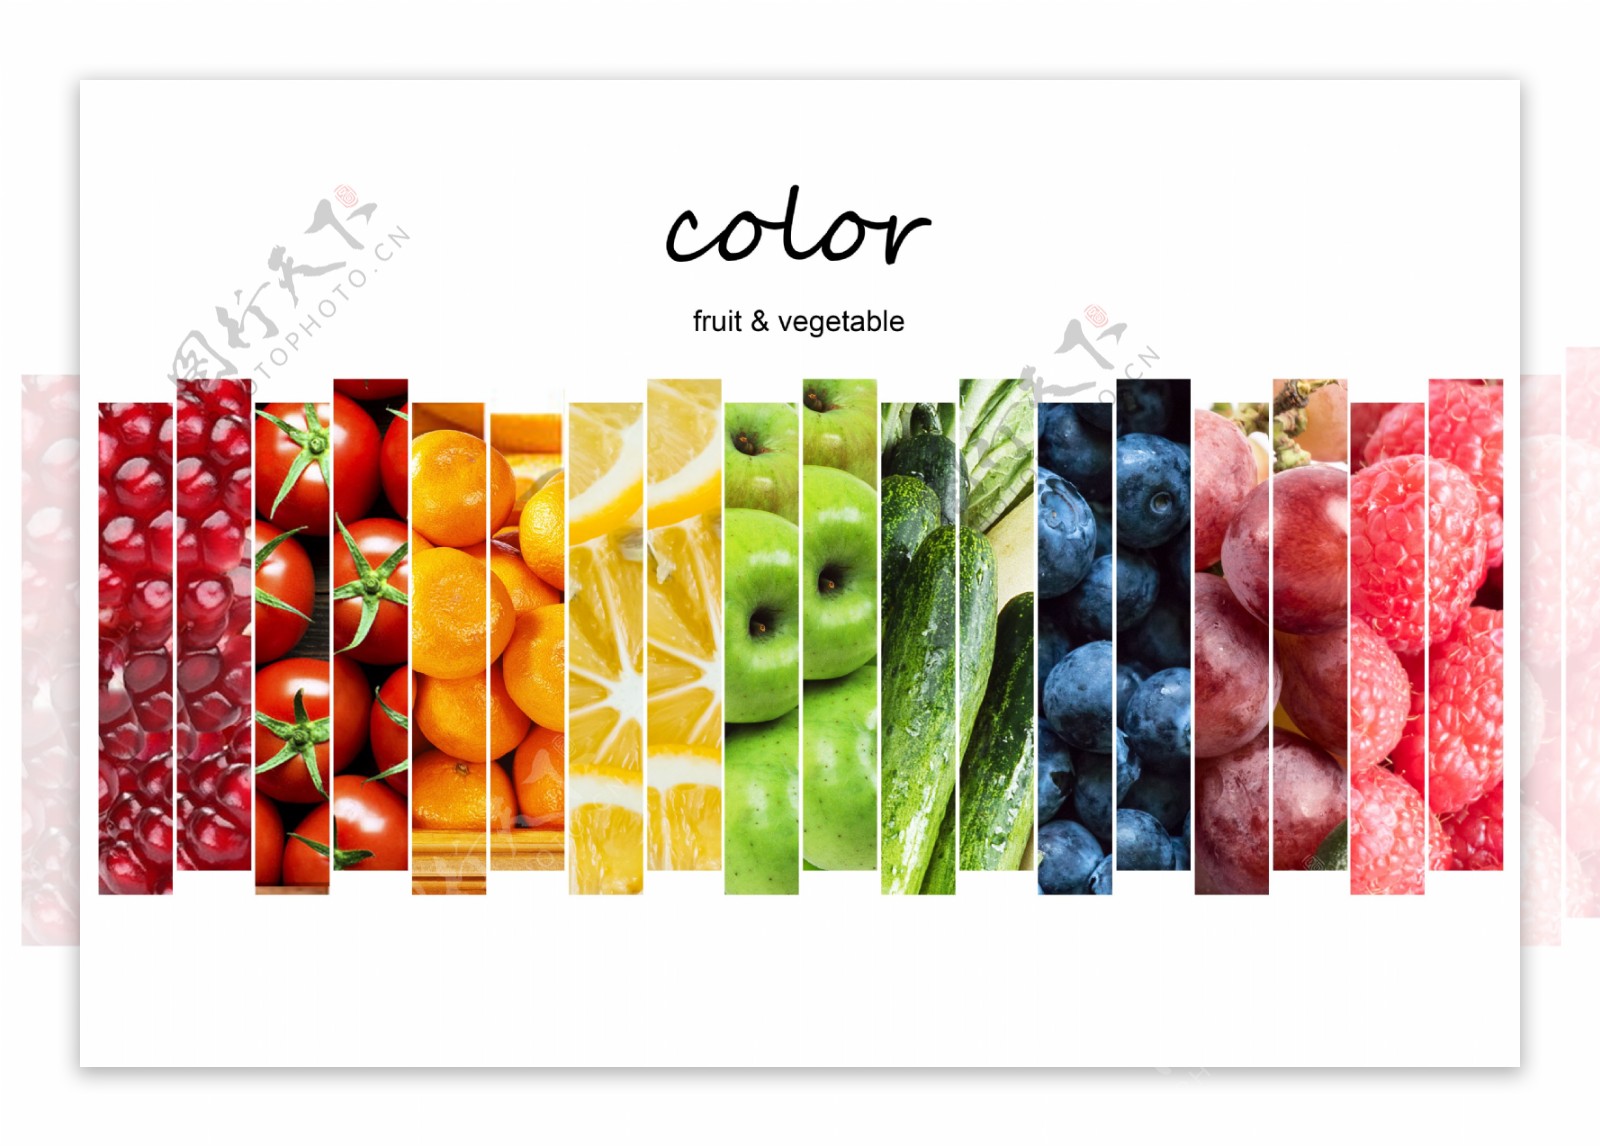 水果蔬菜的色彩拼接1